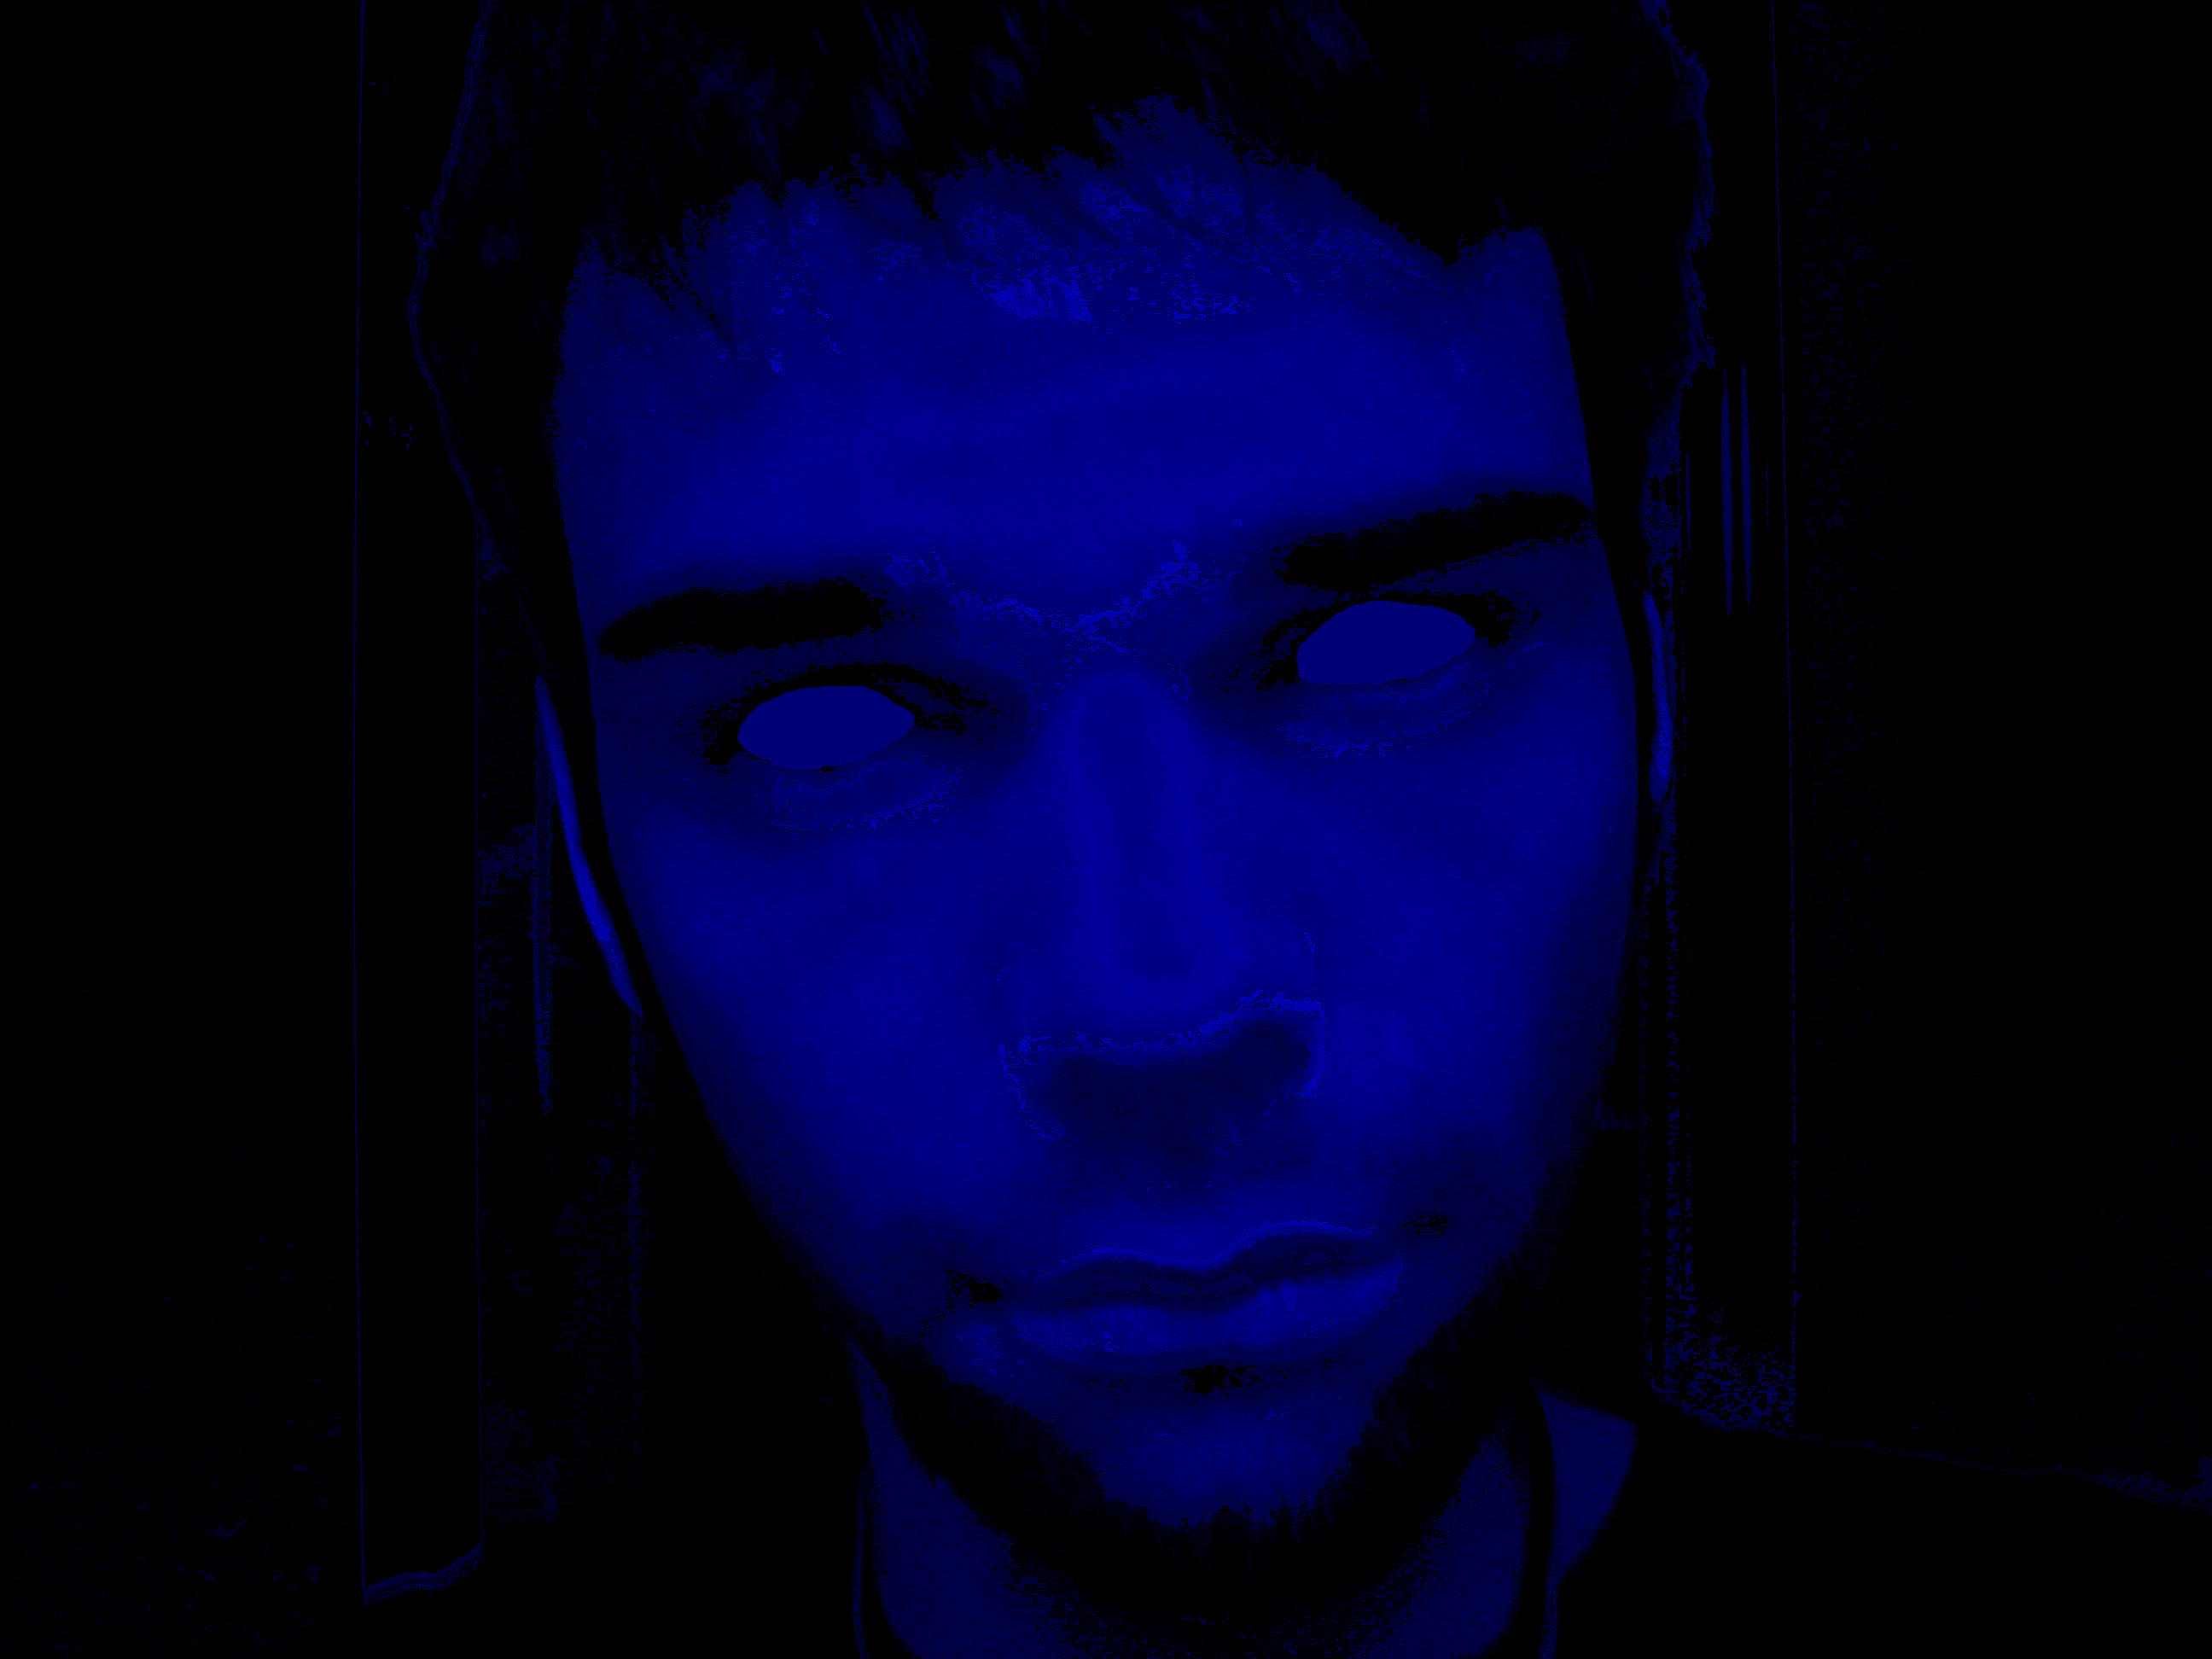 Dark Blue by DarkEmocean